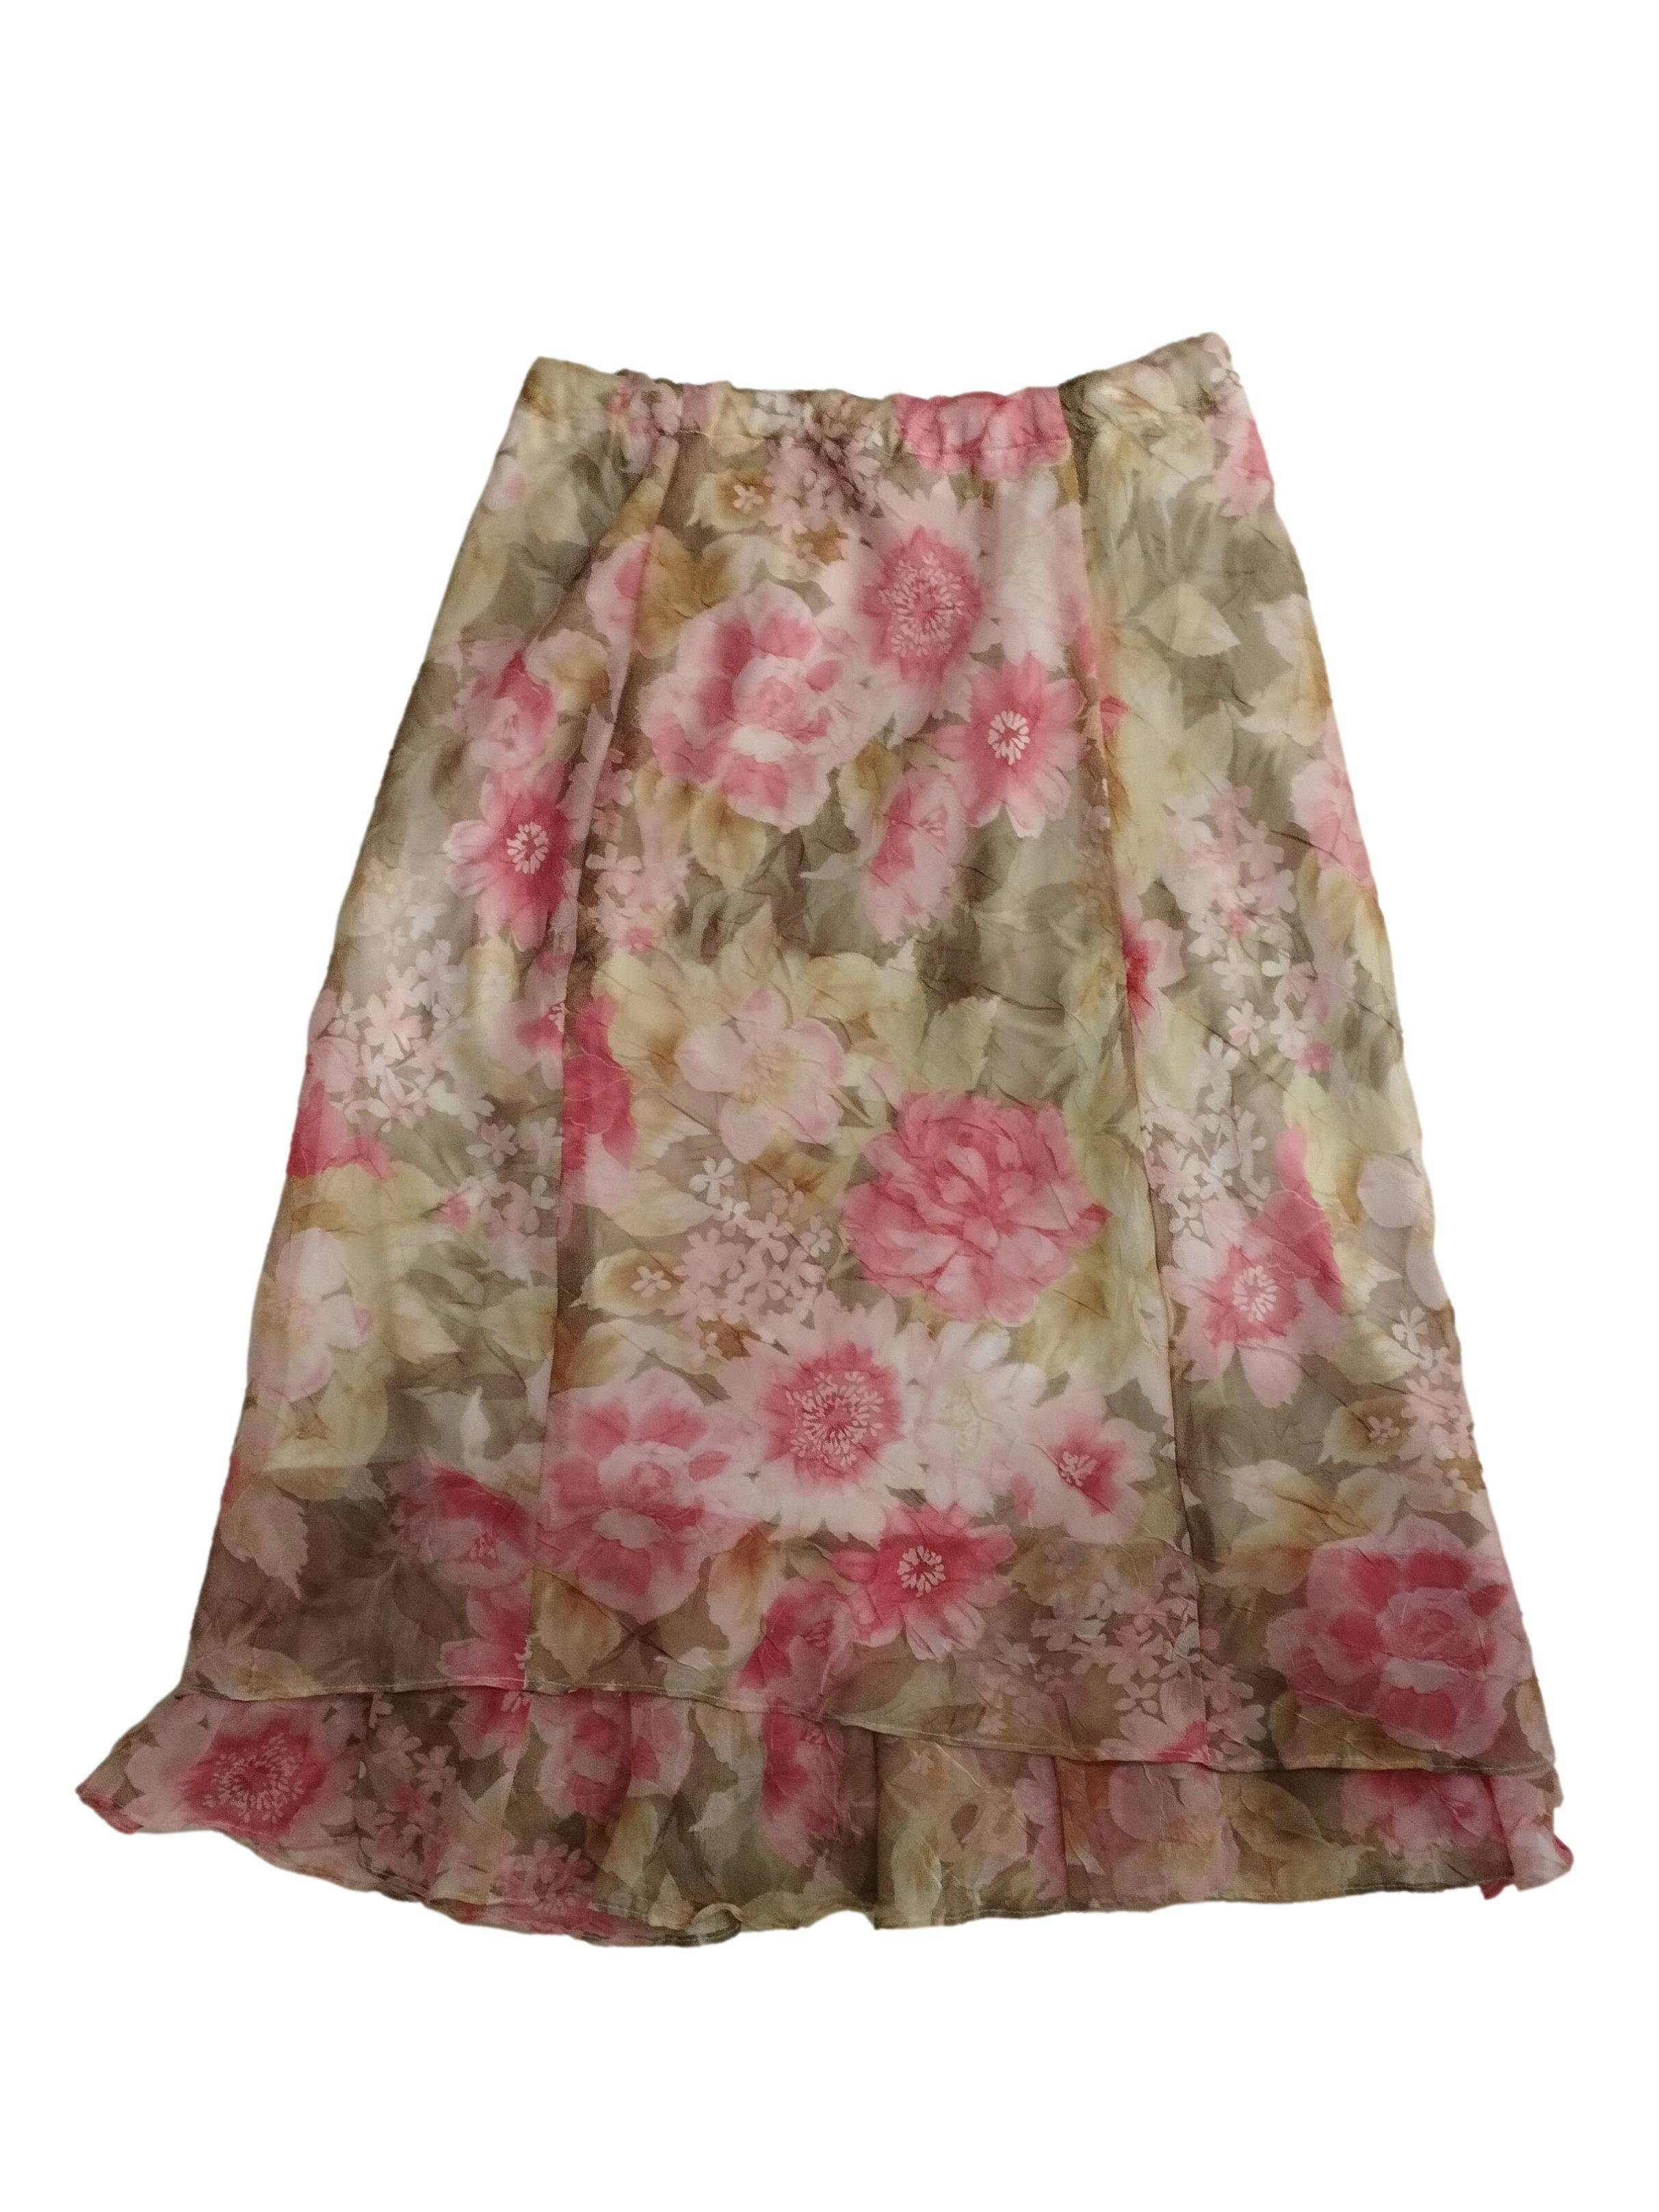 Falda vintage de gasa floreada con forro y elástico en la cintura. Cintura: 70 cm (sin estirar), Largo: 77 cm